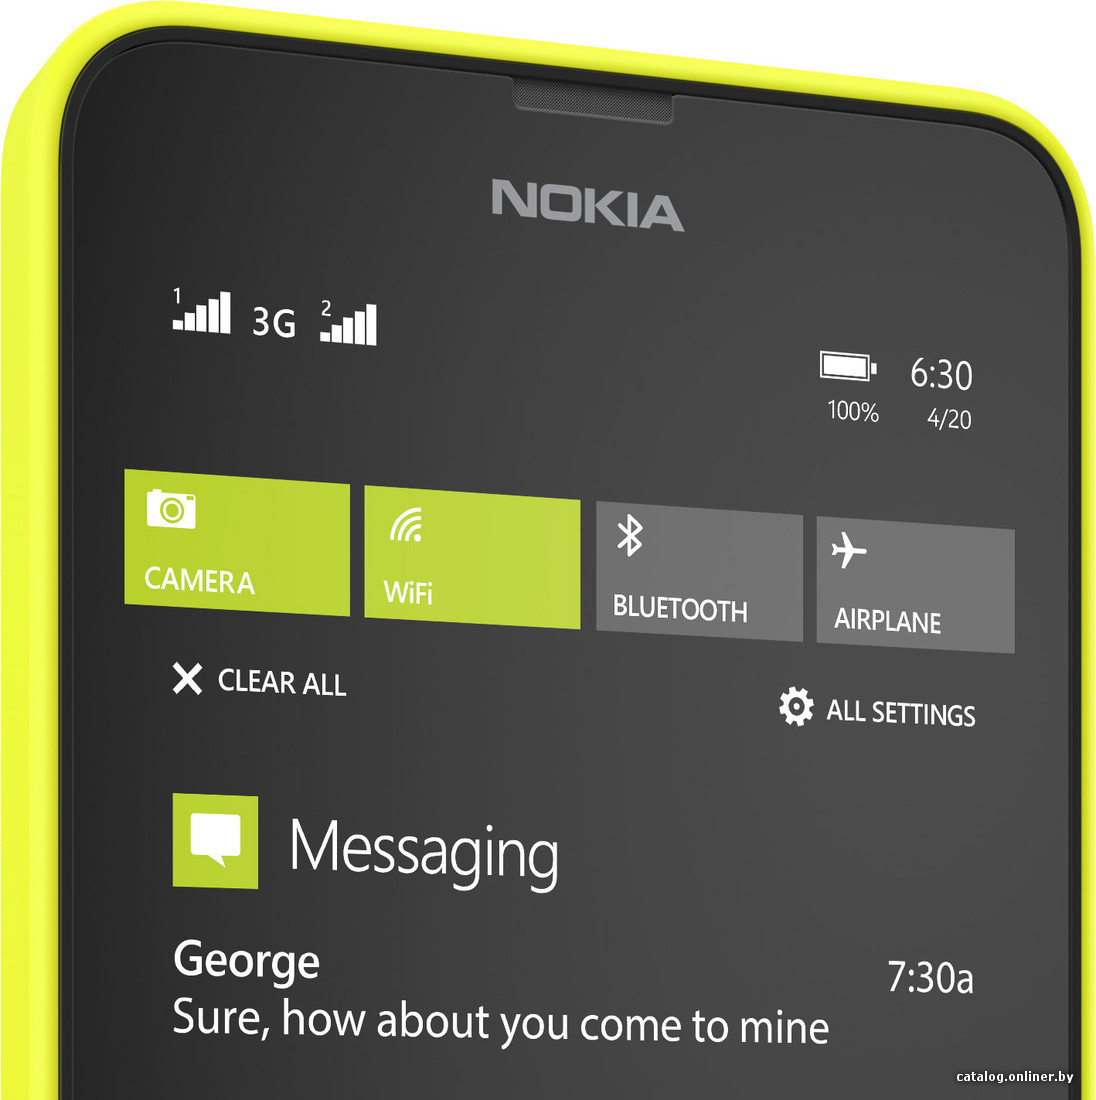 Поворот экрана Nokia Lumia - Windows Phone - Киберфорум